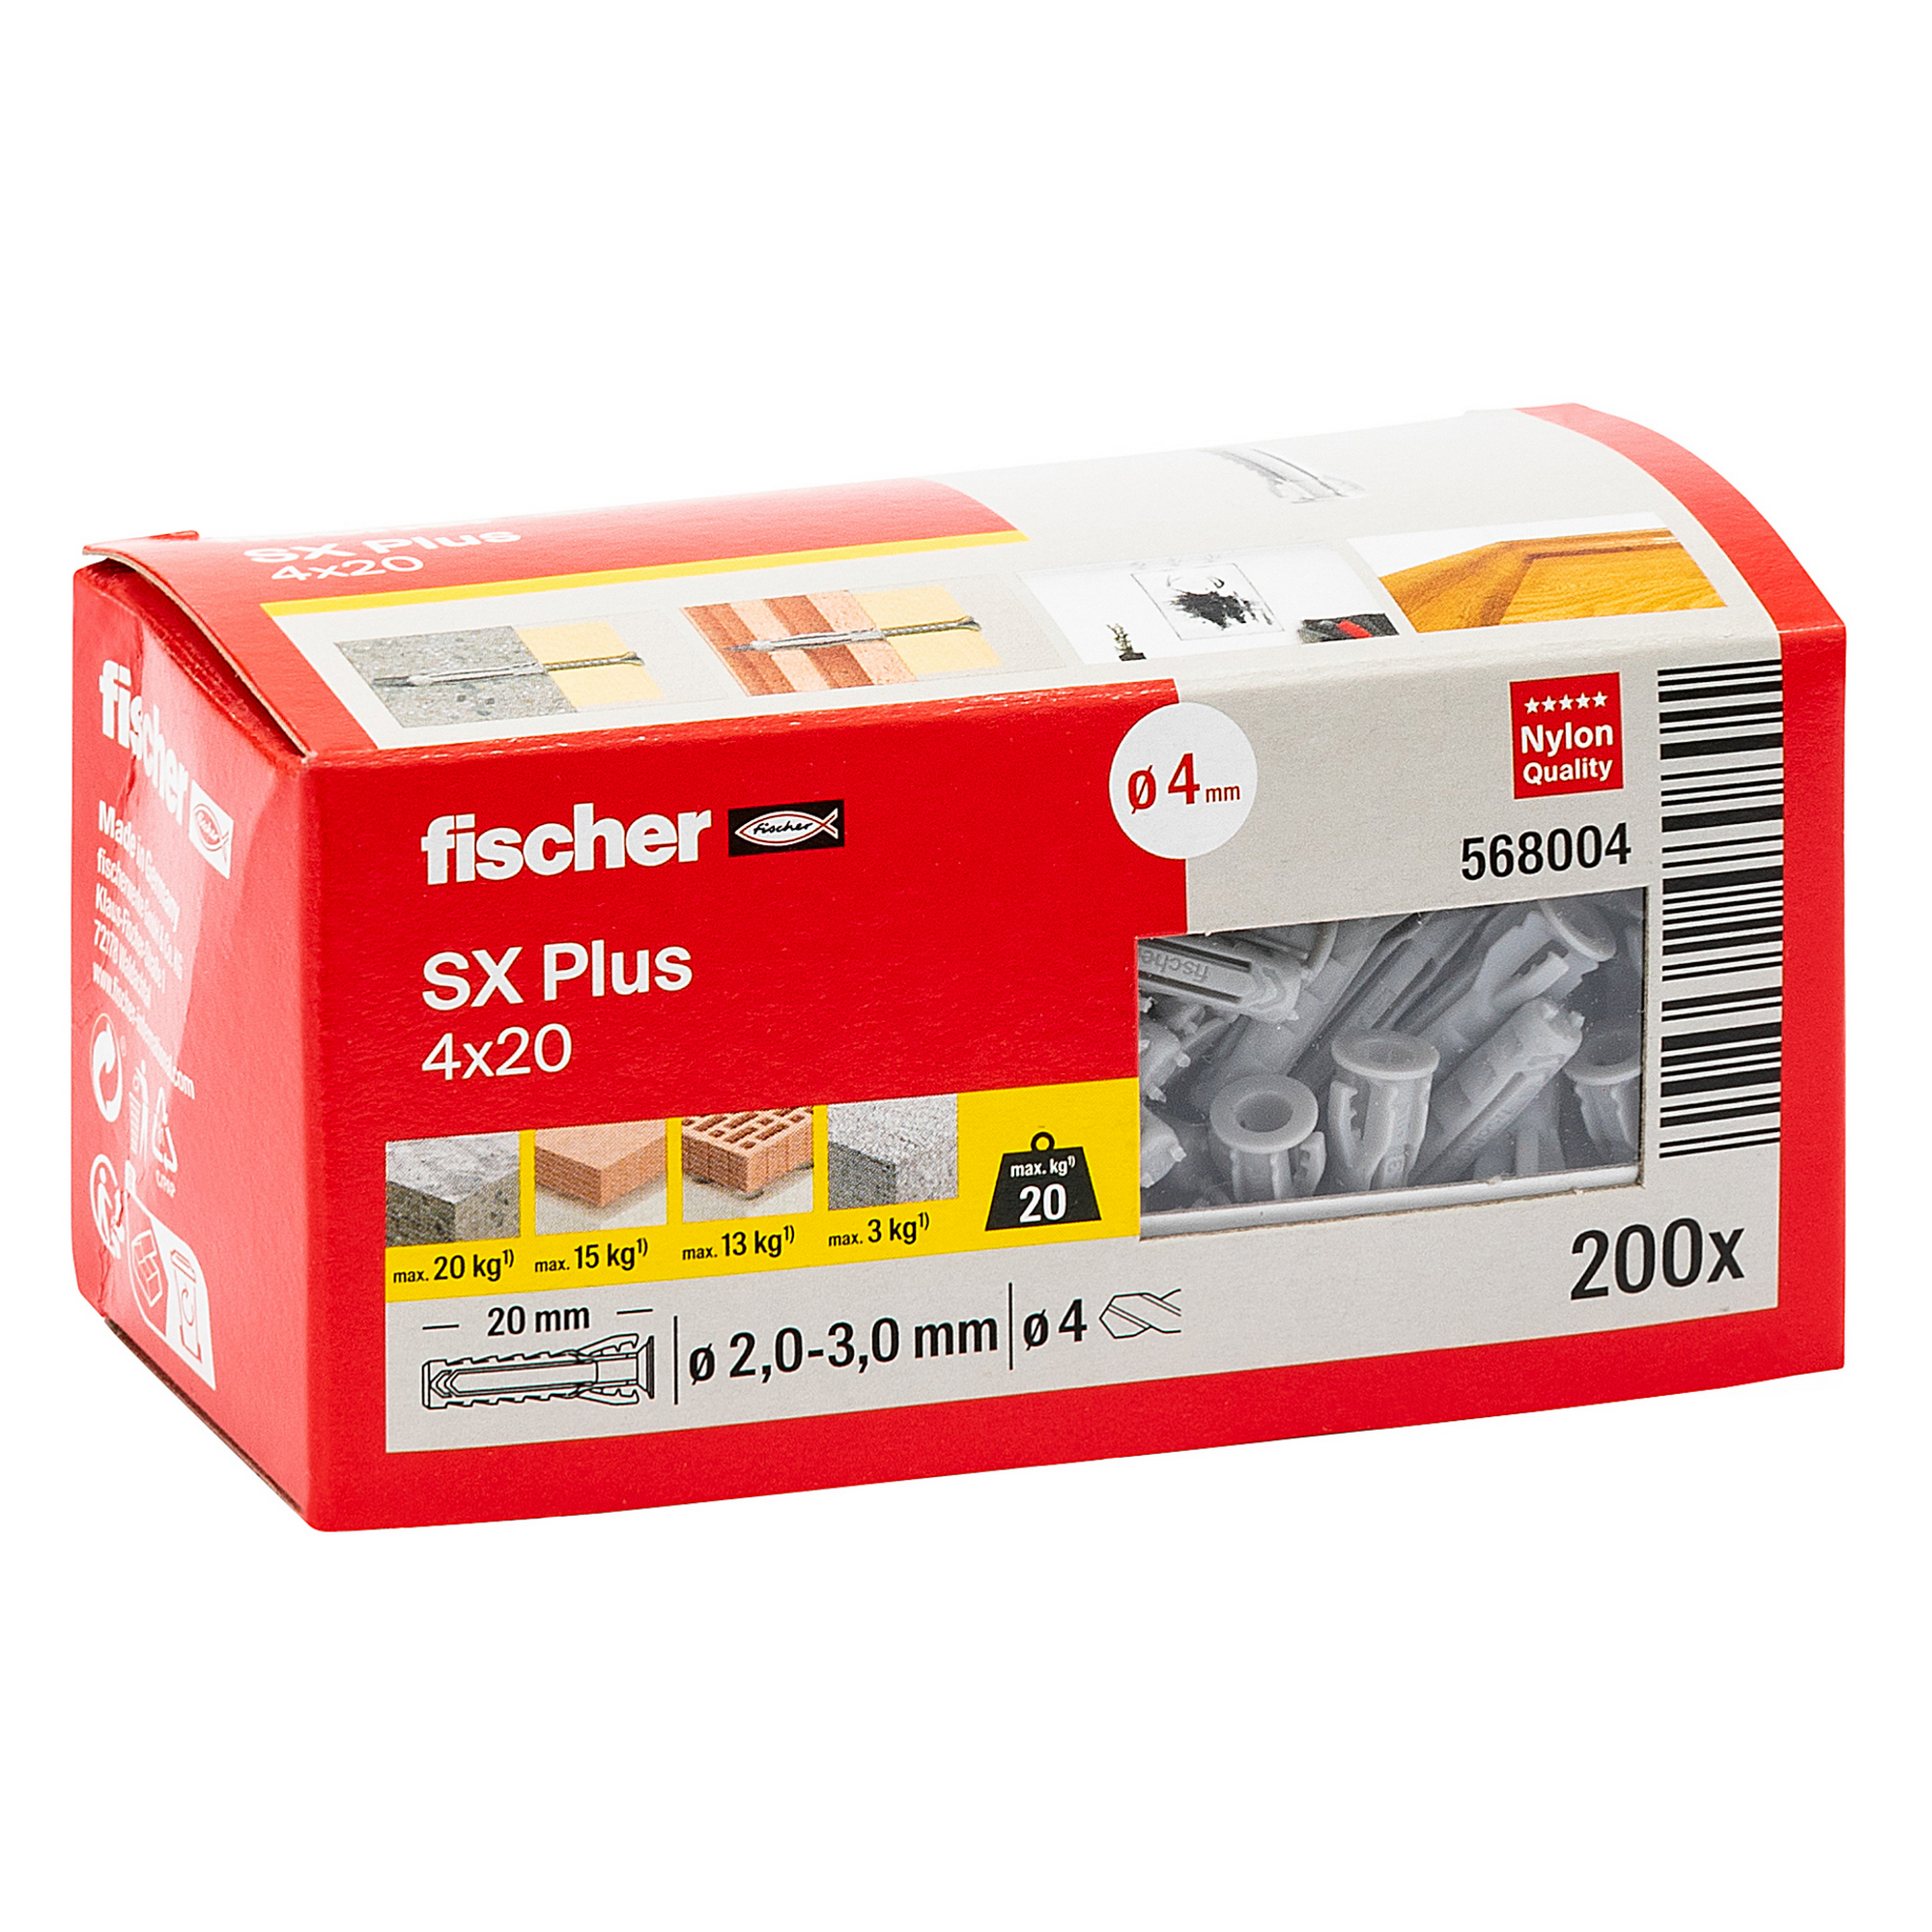 Spreizdübel-Set 'SX Plus' Ø 4 x 20 mm, 200-teilig + product picture